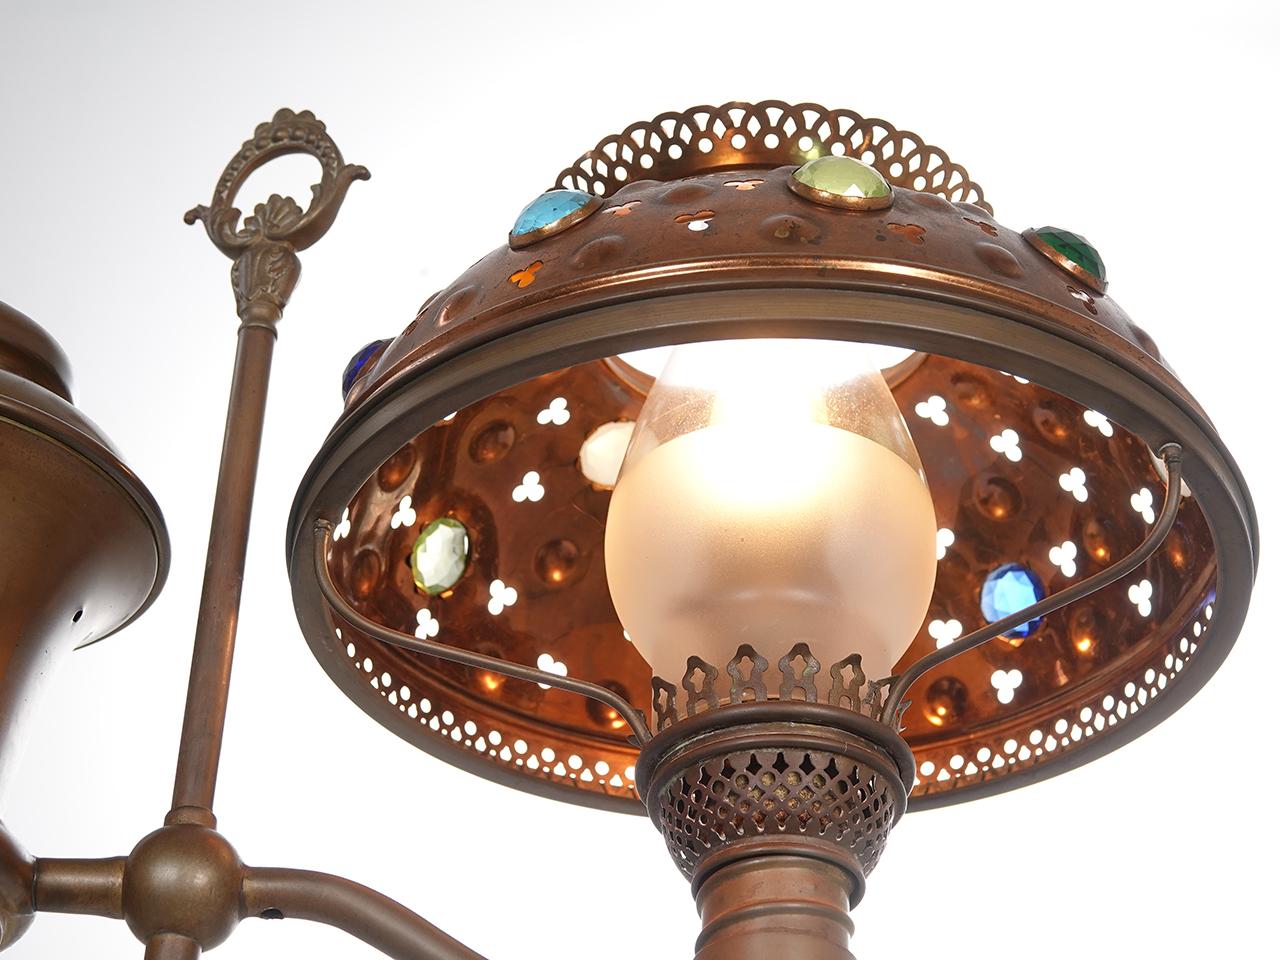 Große verzierte Jeweled Victorian Brass Student Lampe mit 13 geschliffenen Glassteinen und dekorativen Ausschnitten plus klarem Glas Schornstein. Diese Messinglampe ist unsigniert und stammt wahrscheinlich aus den 1870er Jahren. Die Höhe kann leicht